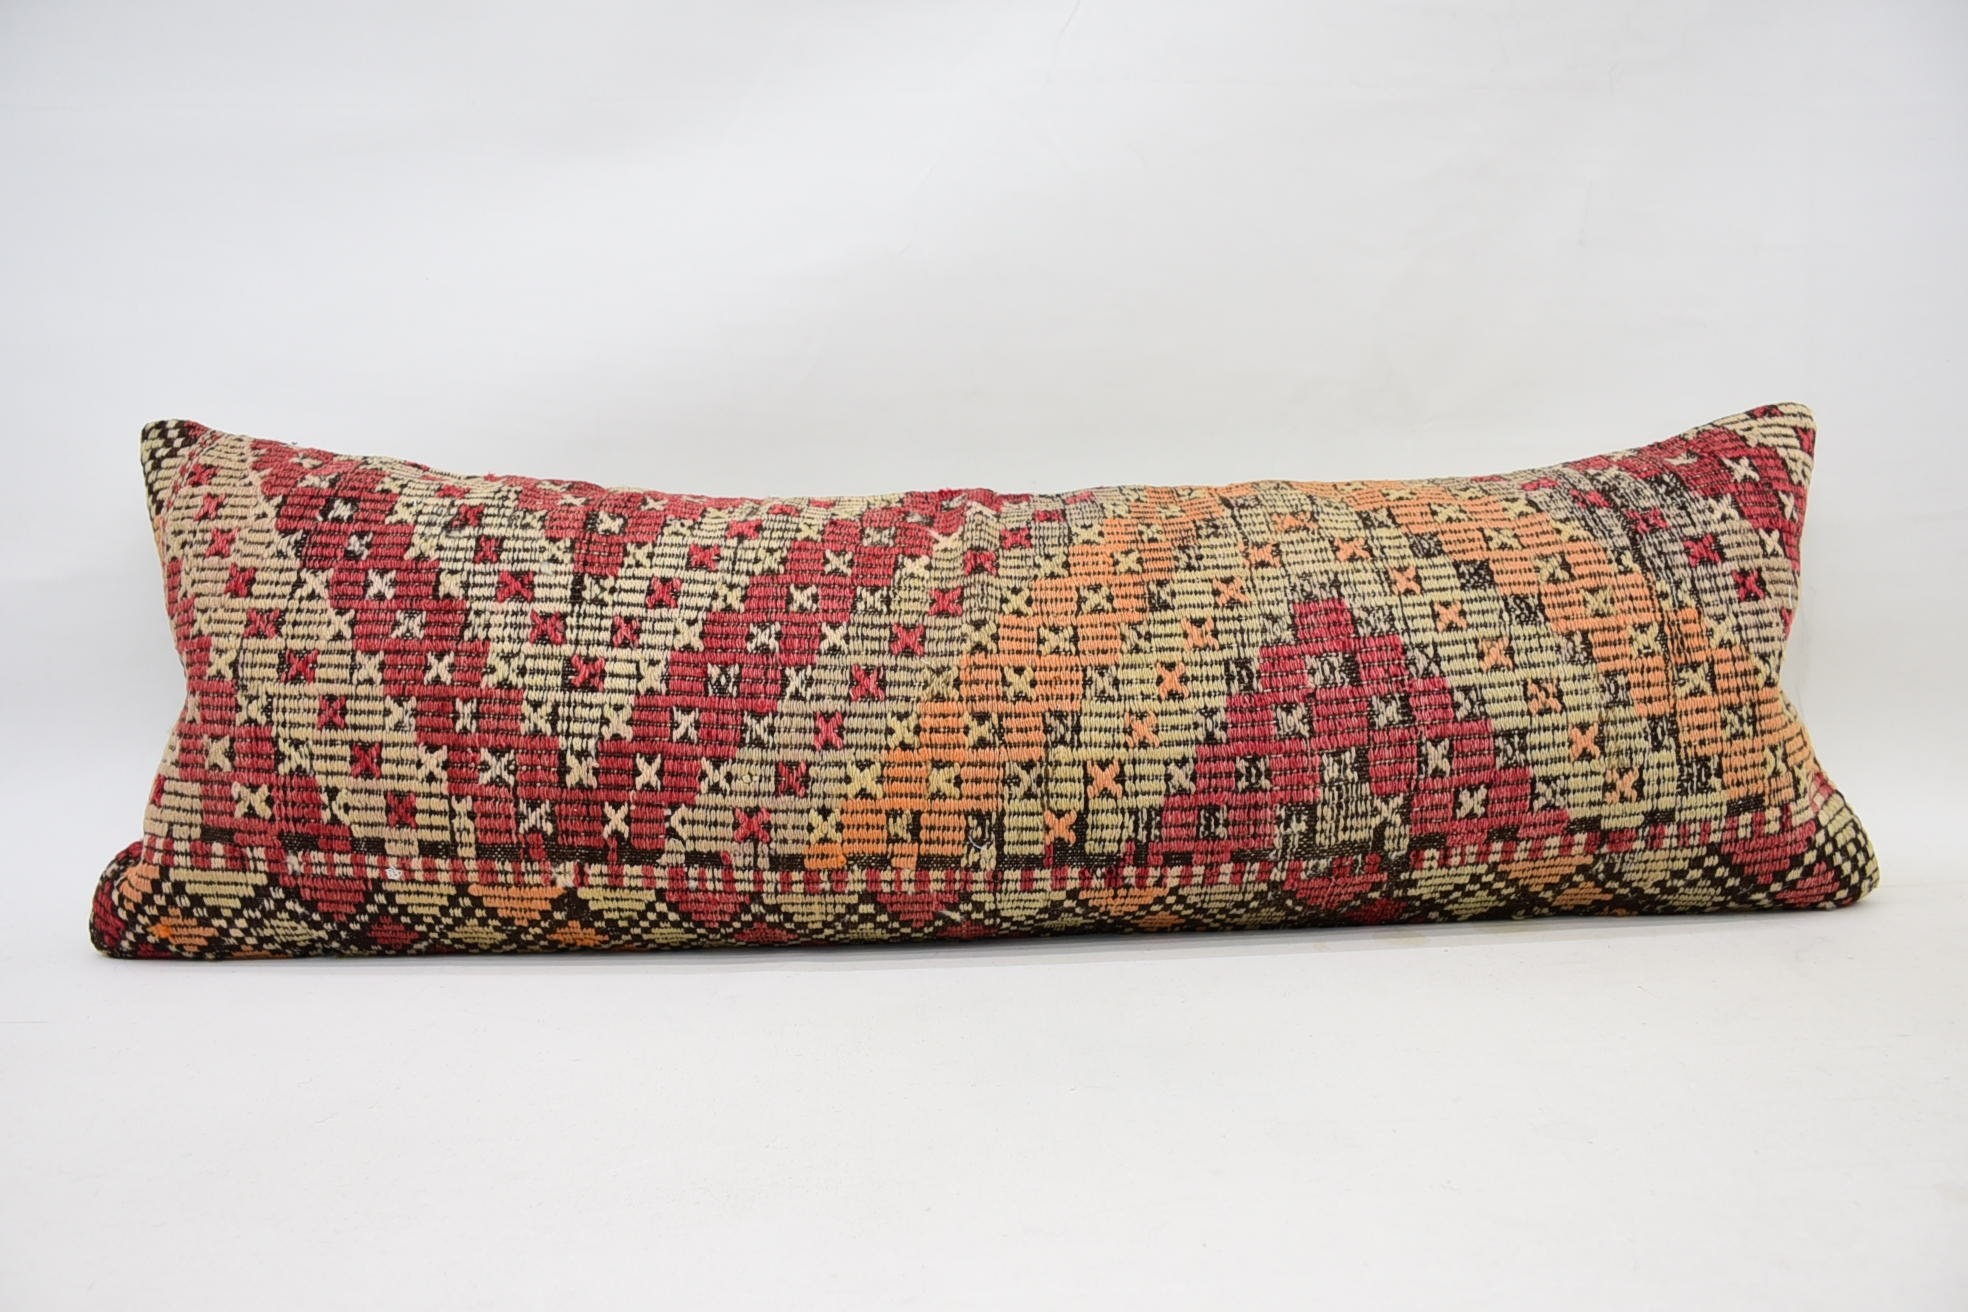 Nötr Yastık, İç Tasarım Yastık, Vintage Kilim Kırlent, Antika Yastıklar, 16"x48" Kırmızı Minder Kılıfı